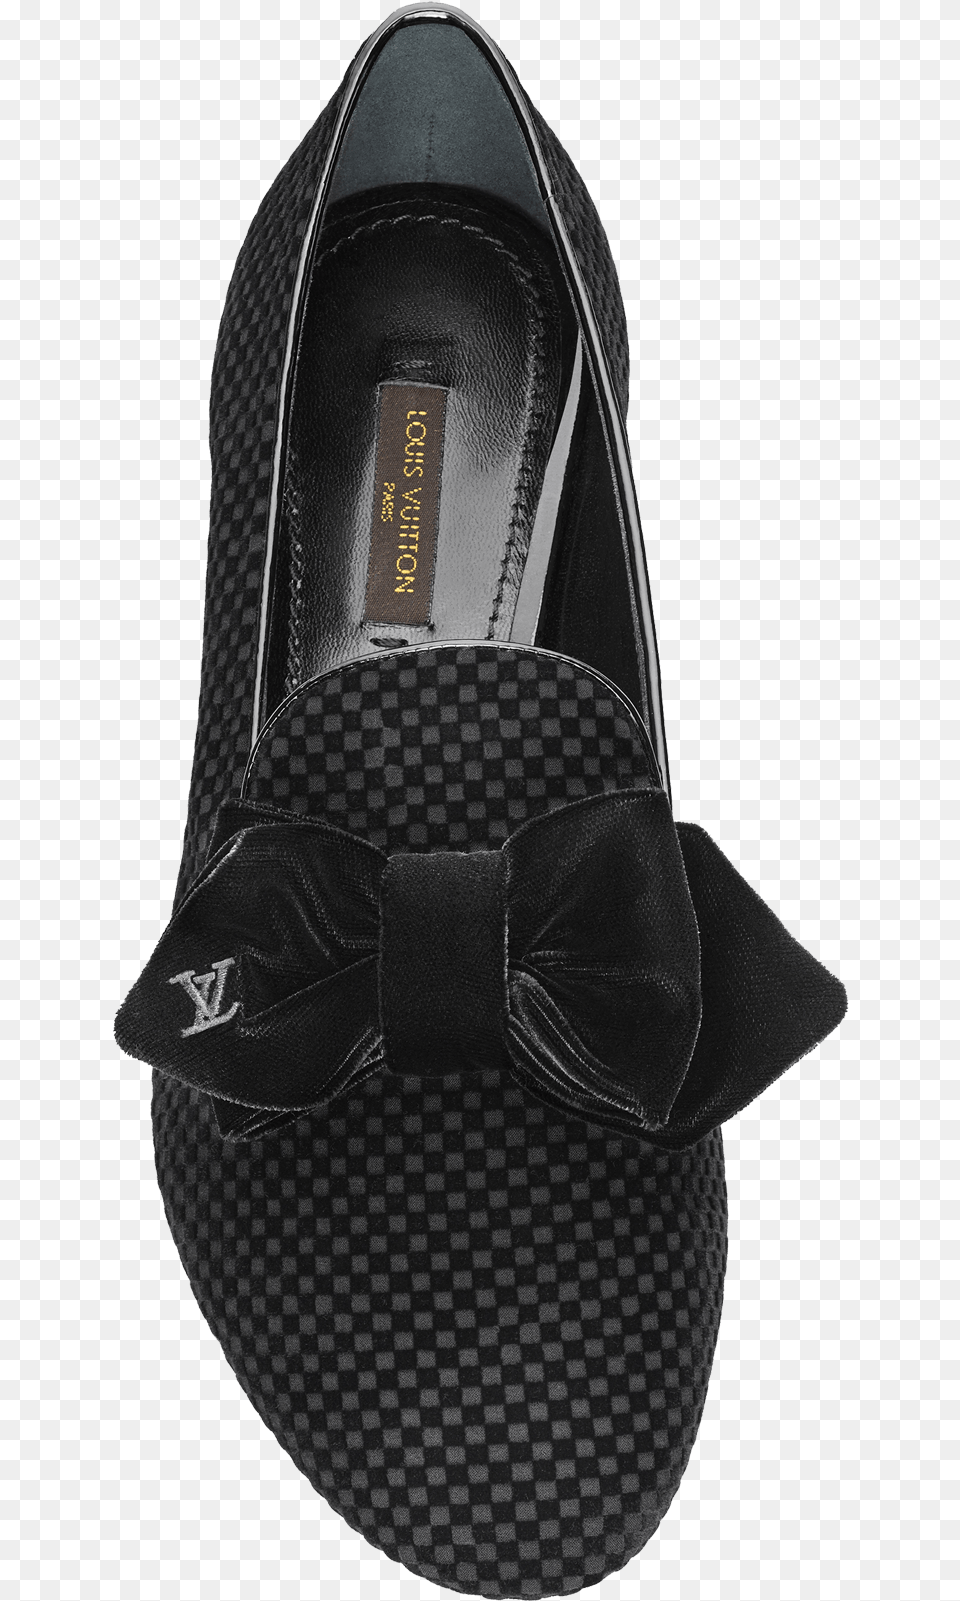 Merit Pump In Black Leather Slip On Shoe, Clothing, Footwear, Accessories, Bag Png Image